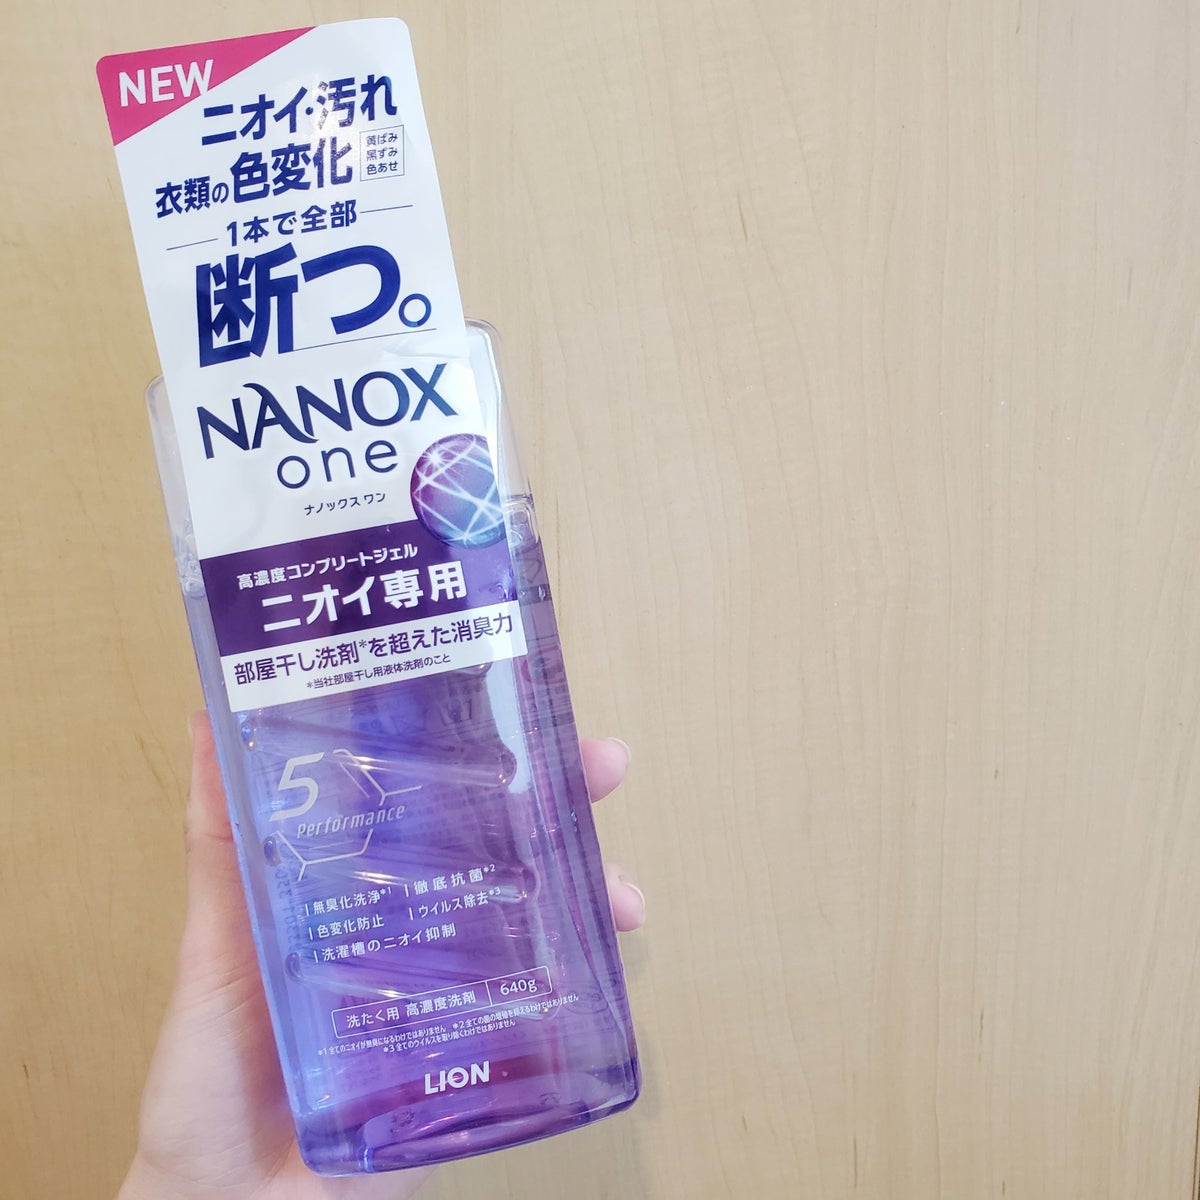 NANOX one ニオイ専用｜トップの口コミ - 部屋干しや汚れにはこれ ...